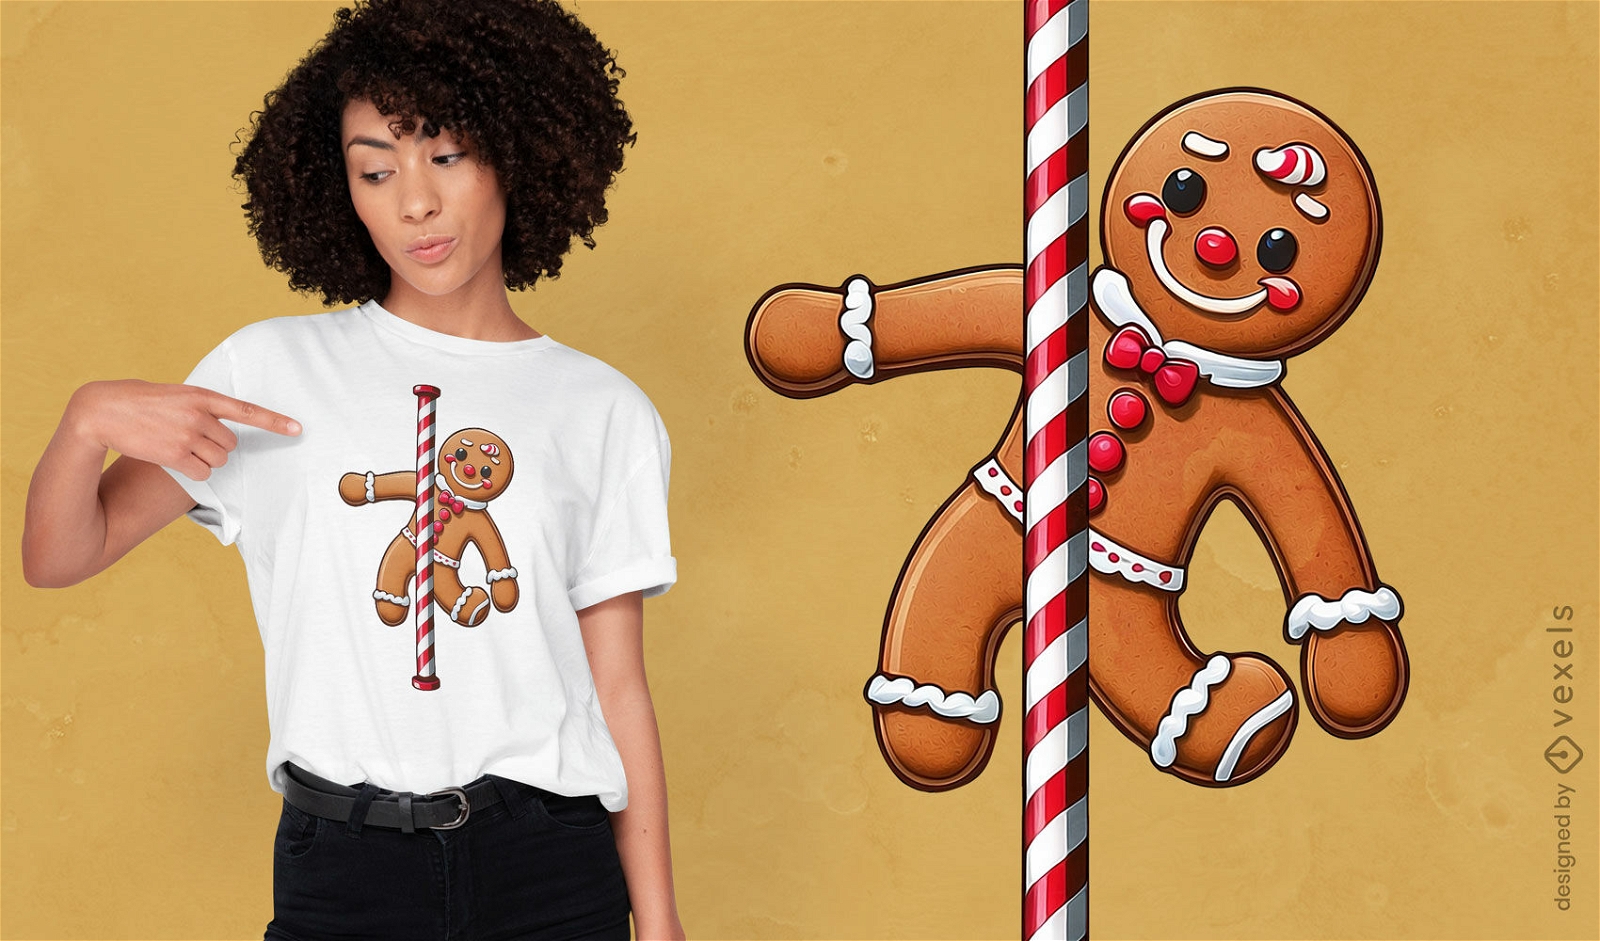 Gingerbread man cookie t-shirt design